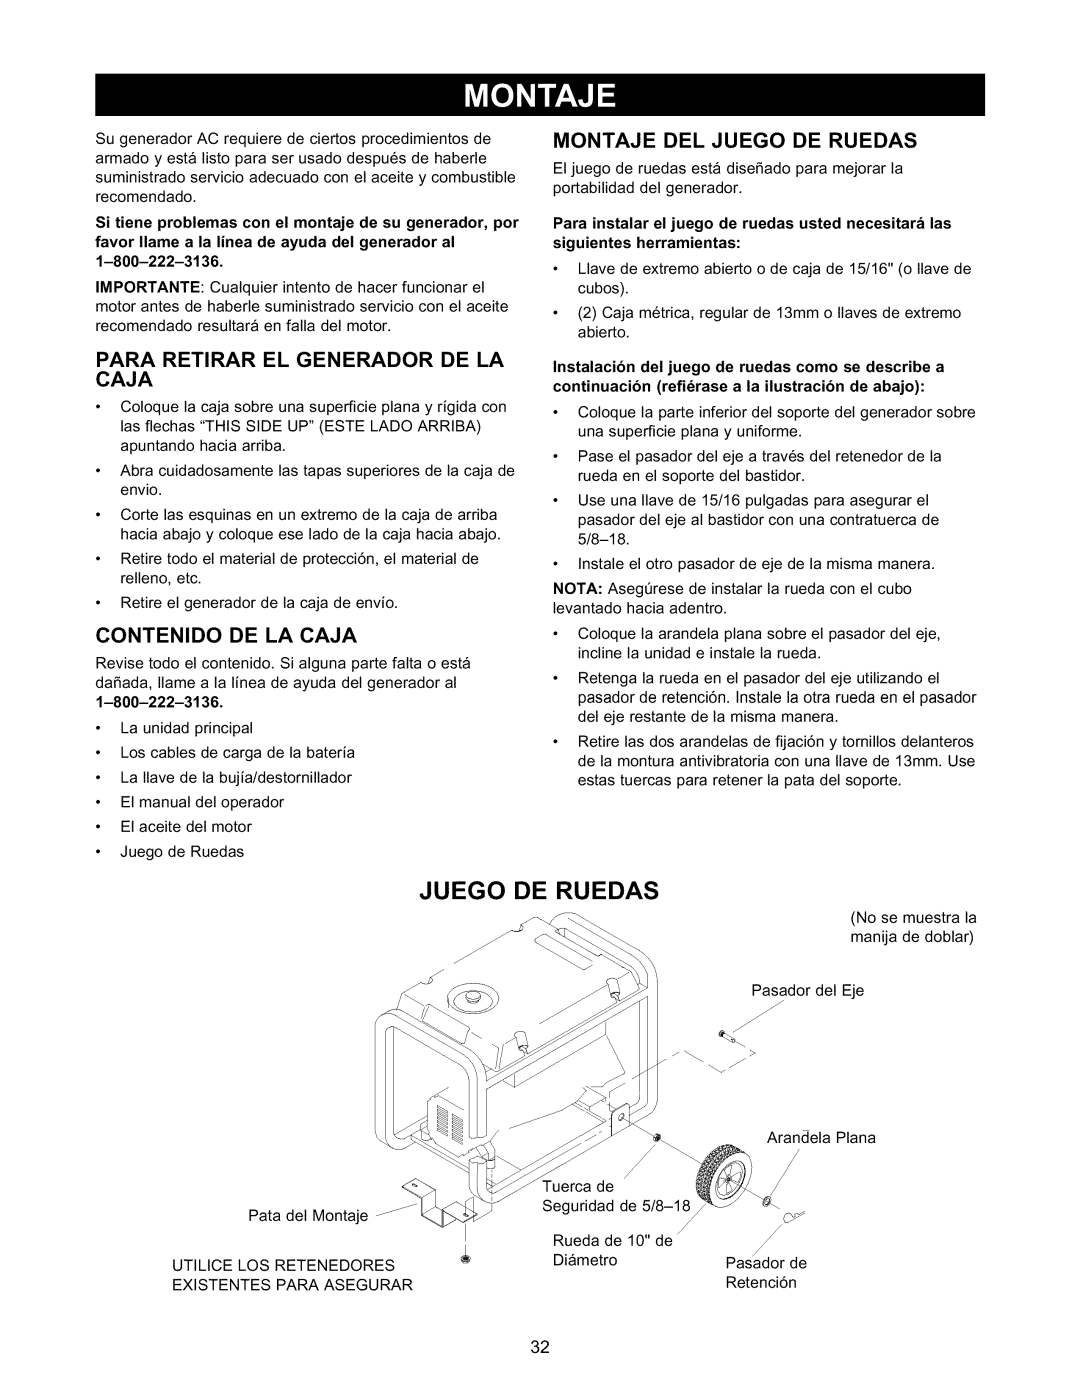 Craftsman 580.327141 owner manual Juego De Ruedas, Para Retirar El Generador De La, Contenido De La Caja 